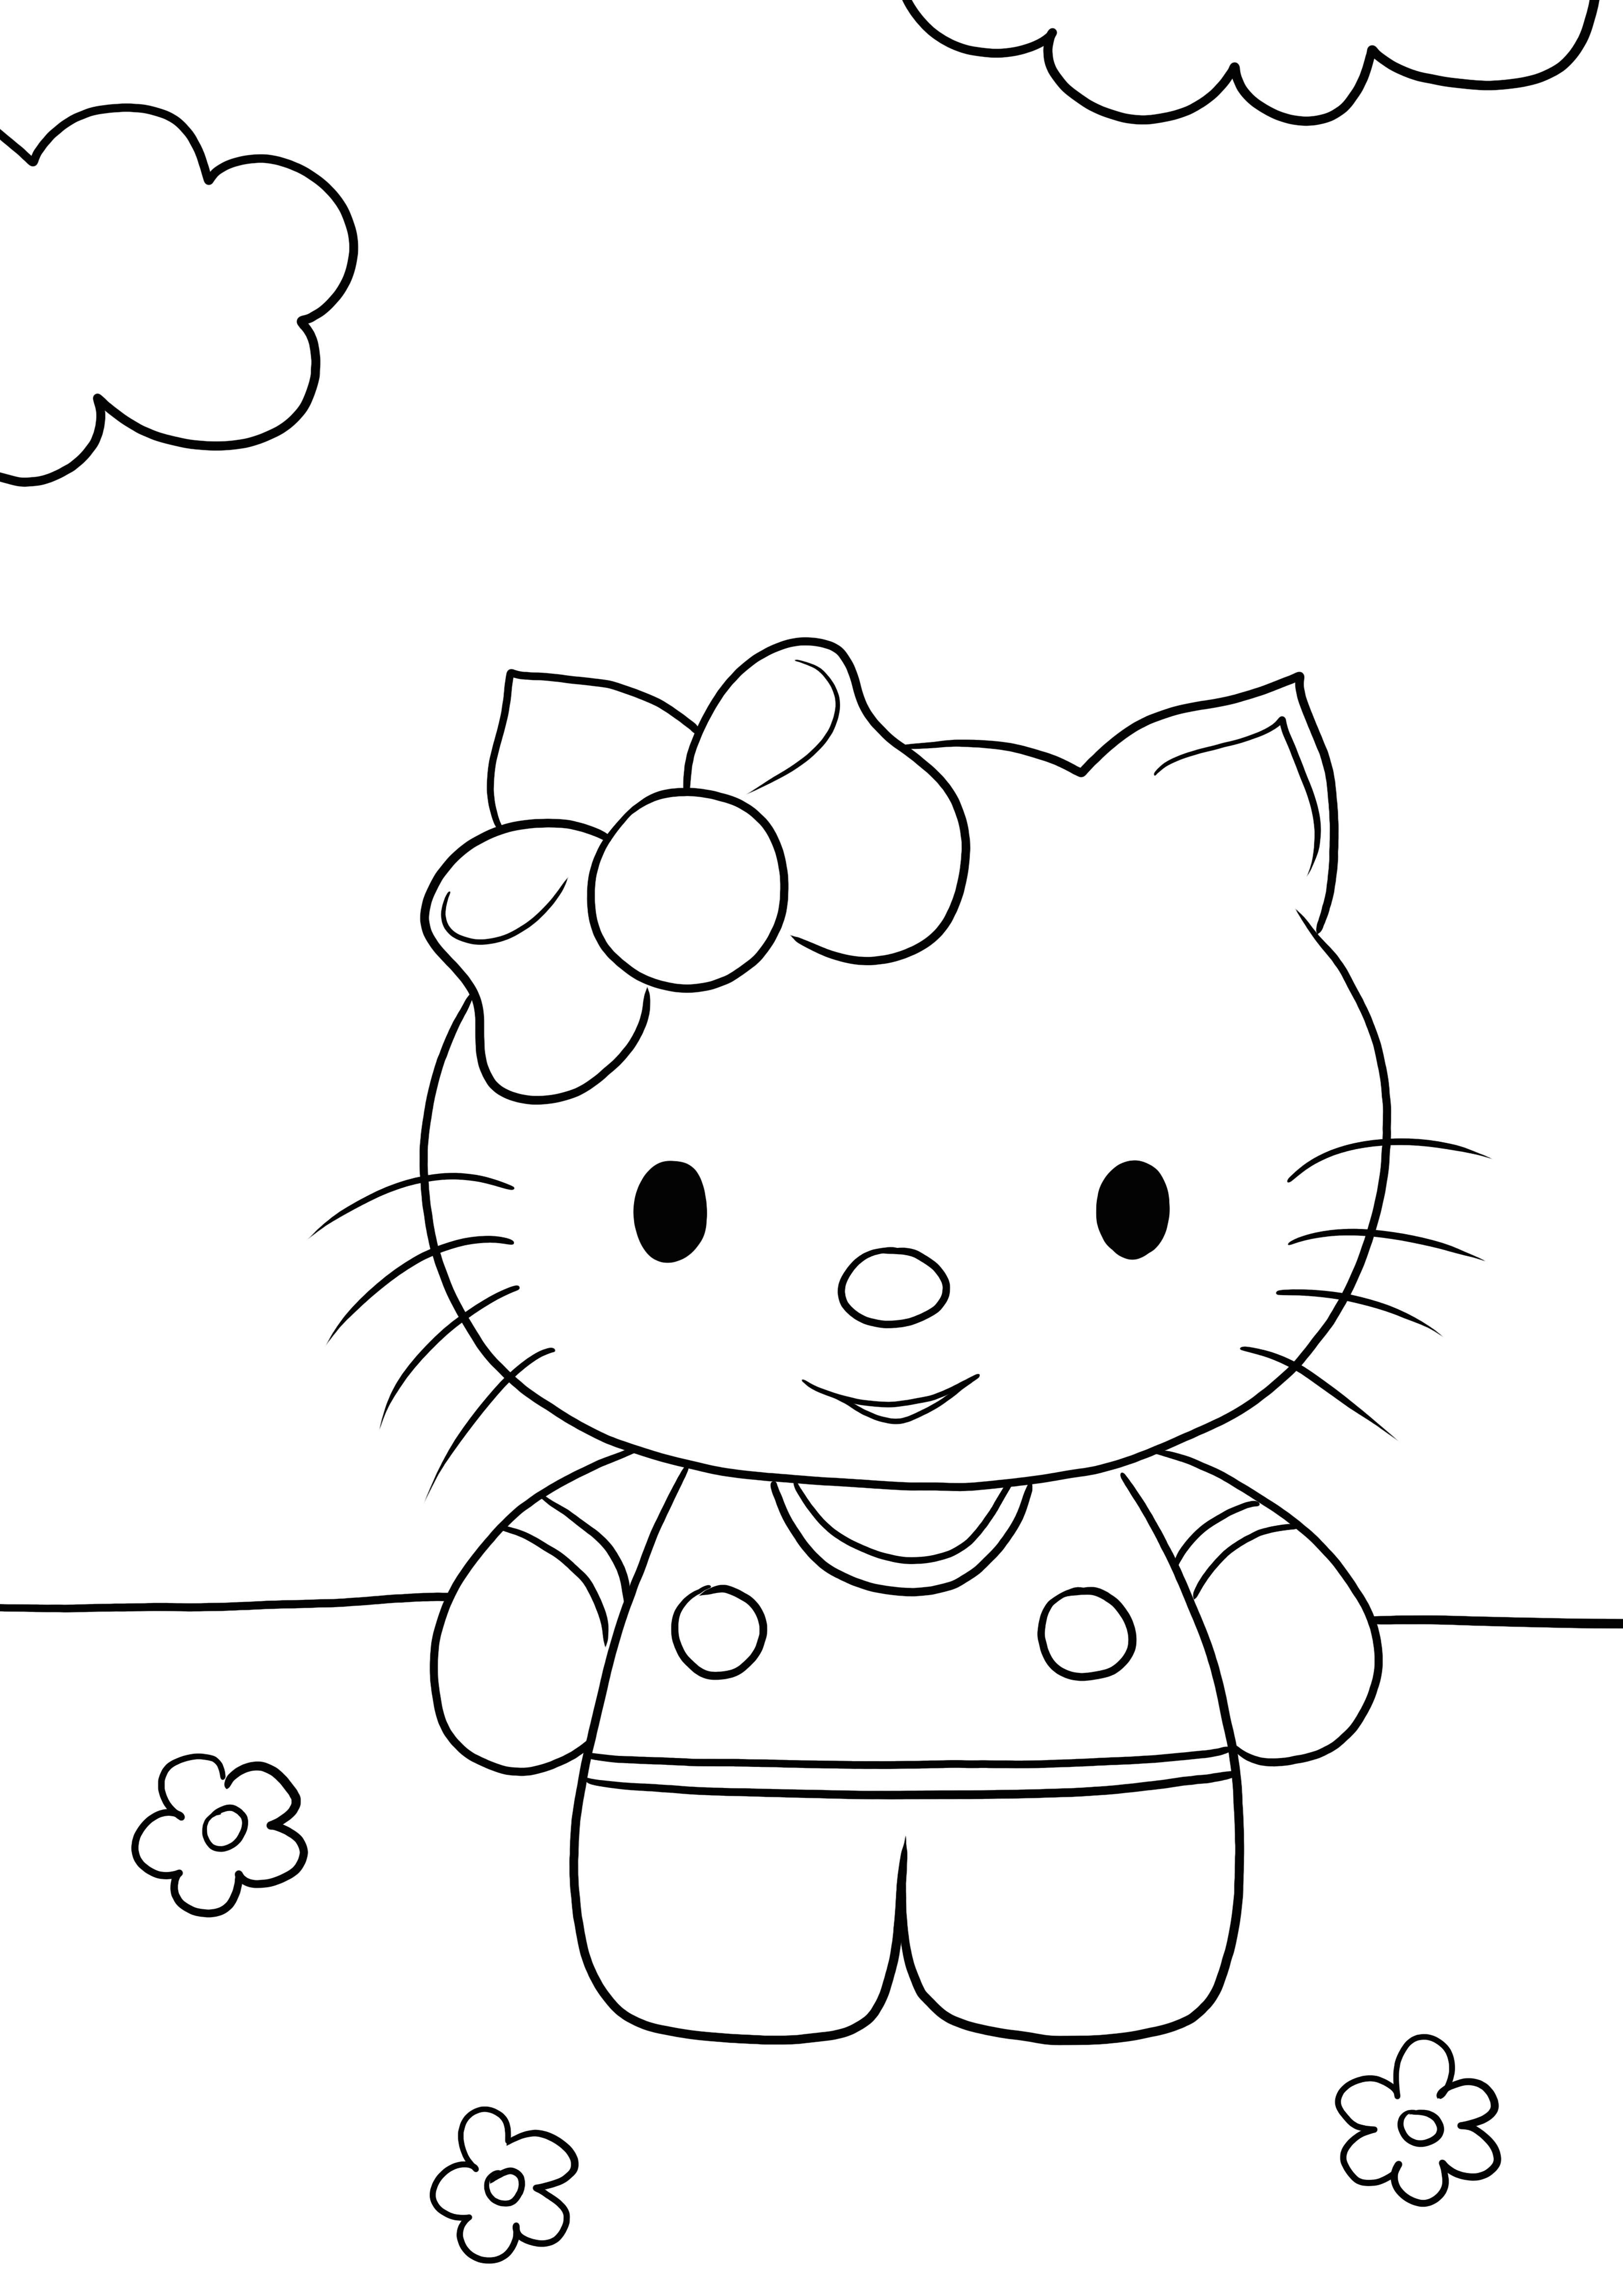 Darmowa kolorowanka z uśmiechniętą Hello Kitty do wydrukowania lub pobrania